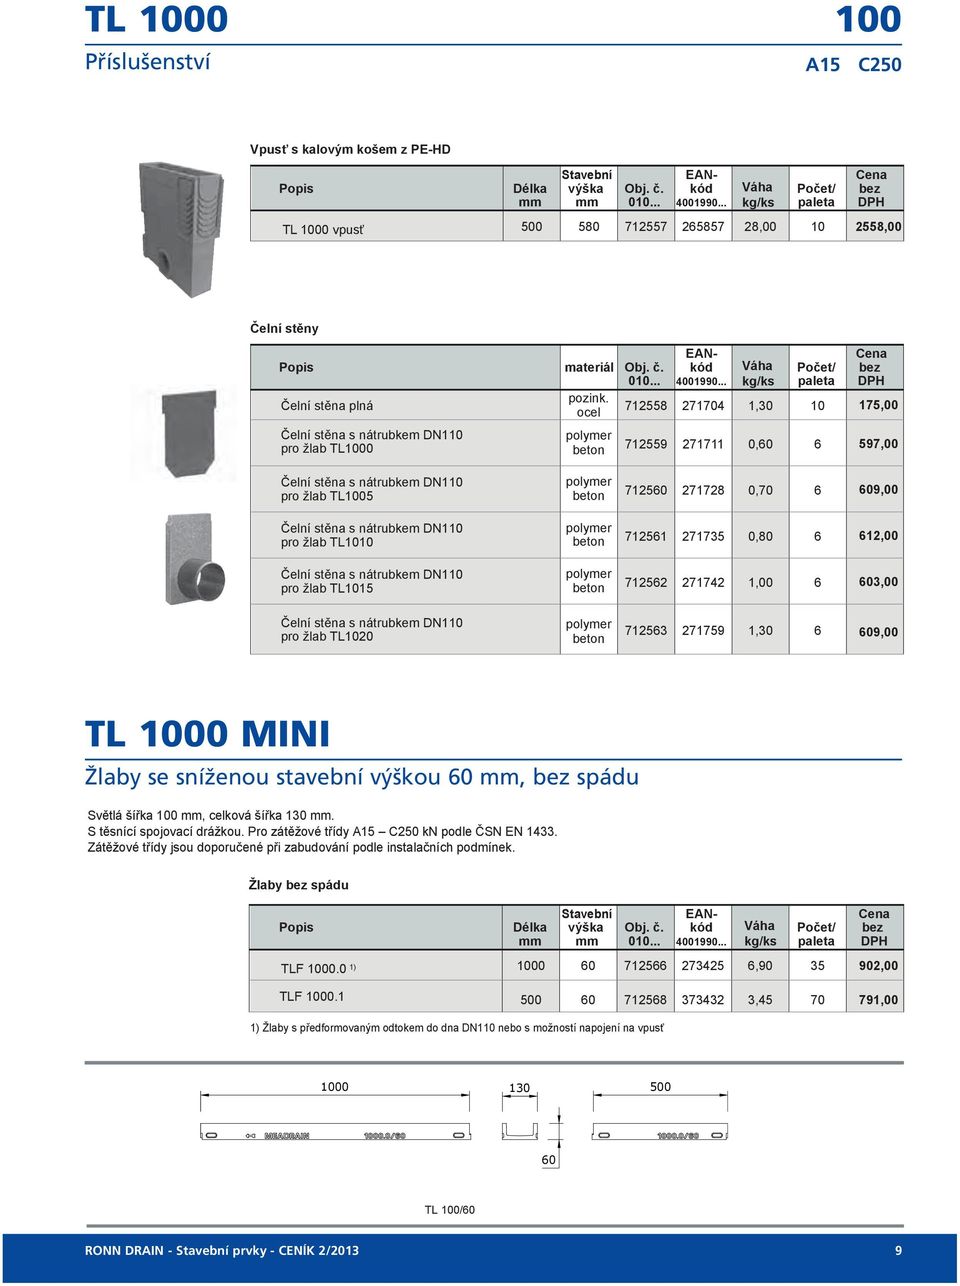 1000 MINI TL1000 MINI Žlaby se sníženou stavební výškou 60, bez spádu TLF 1000.